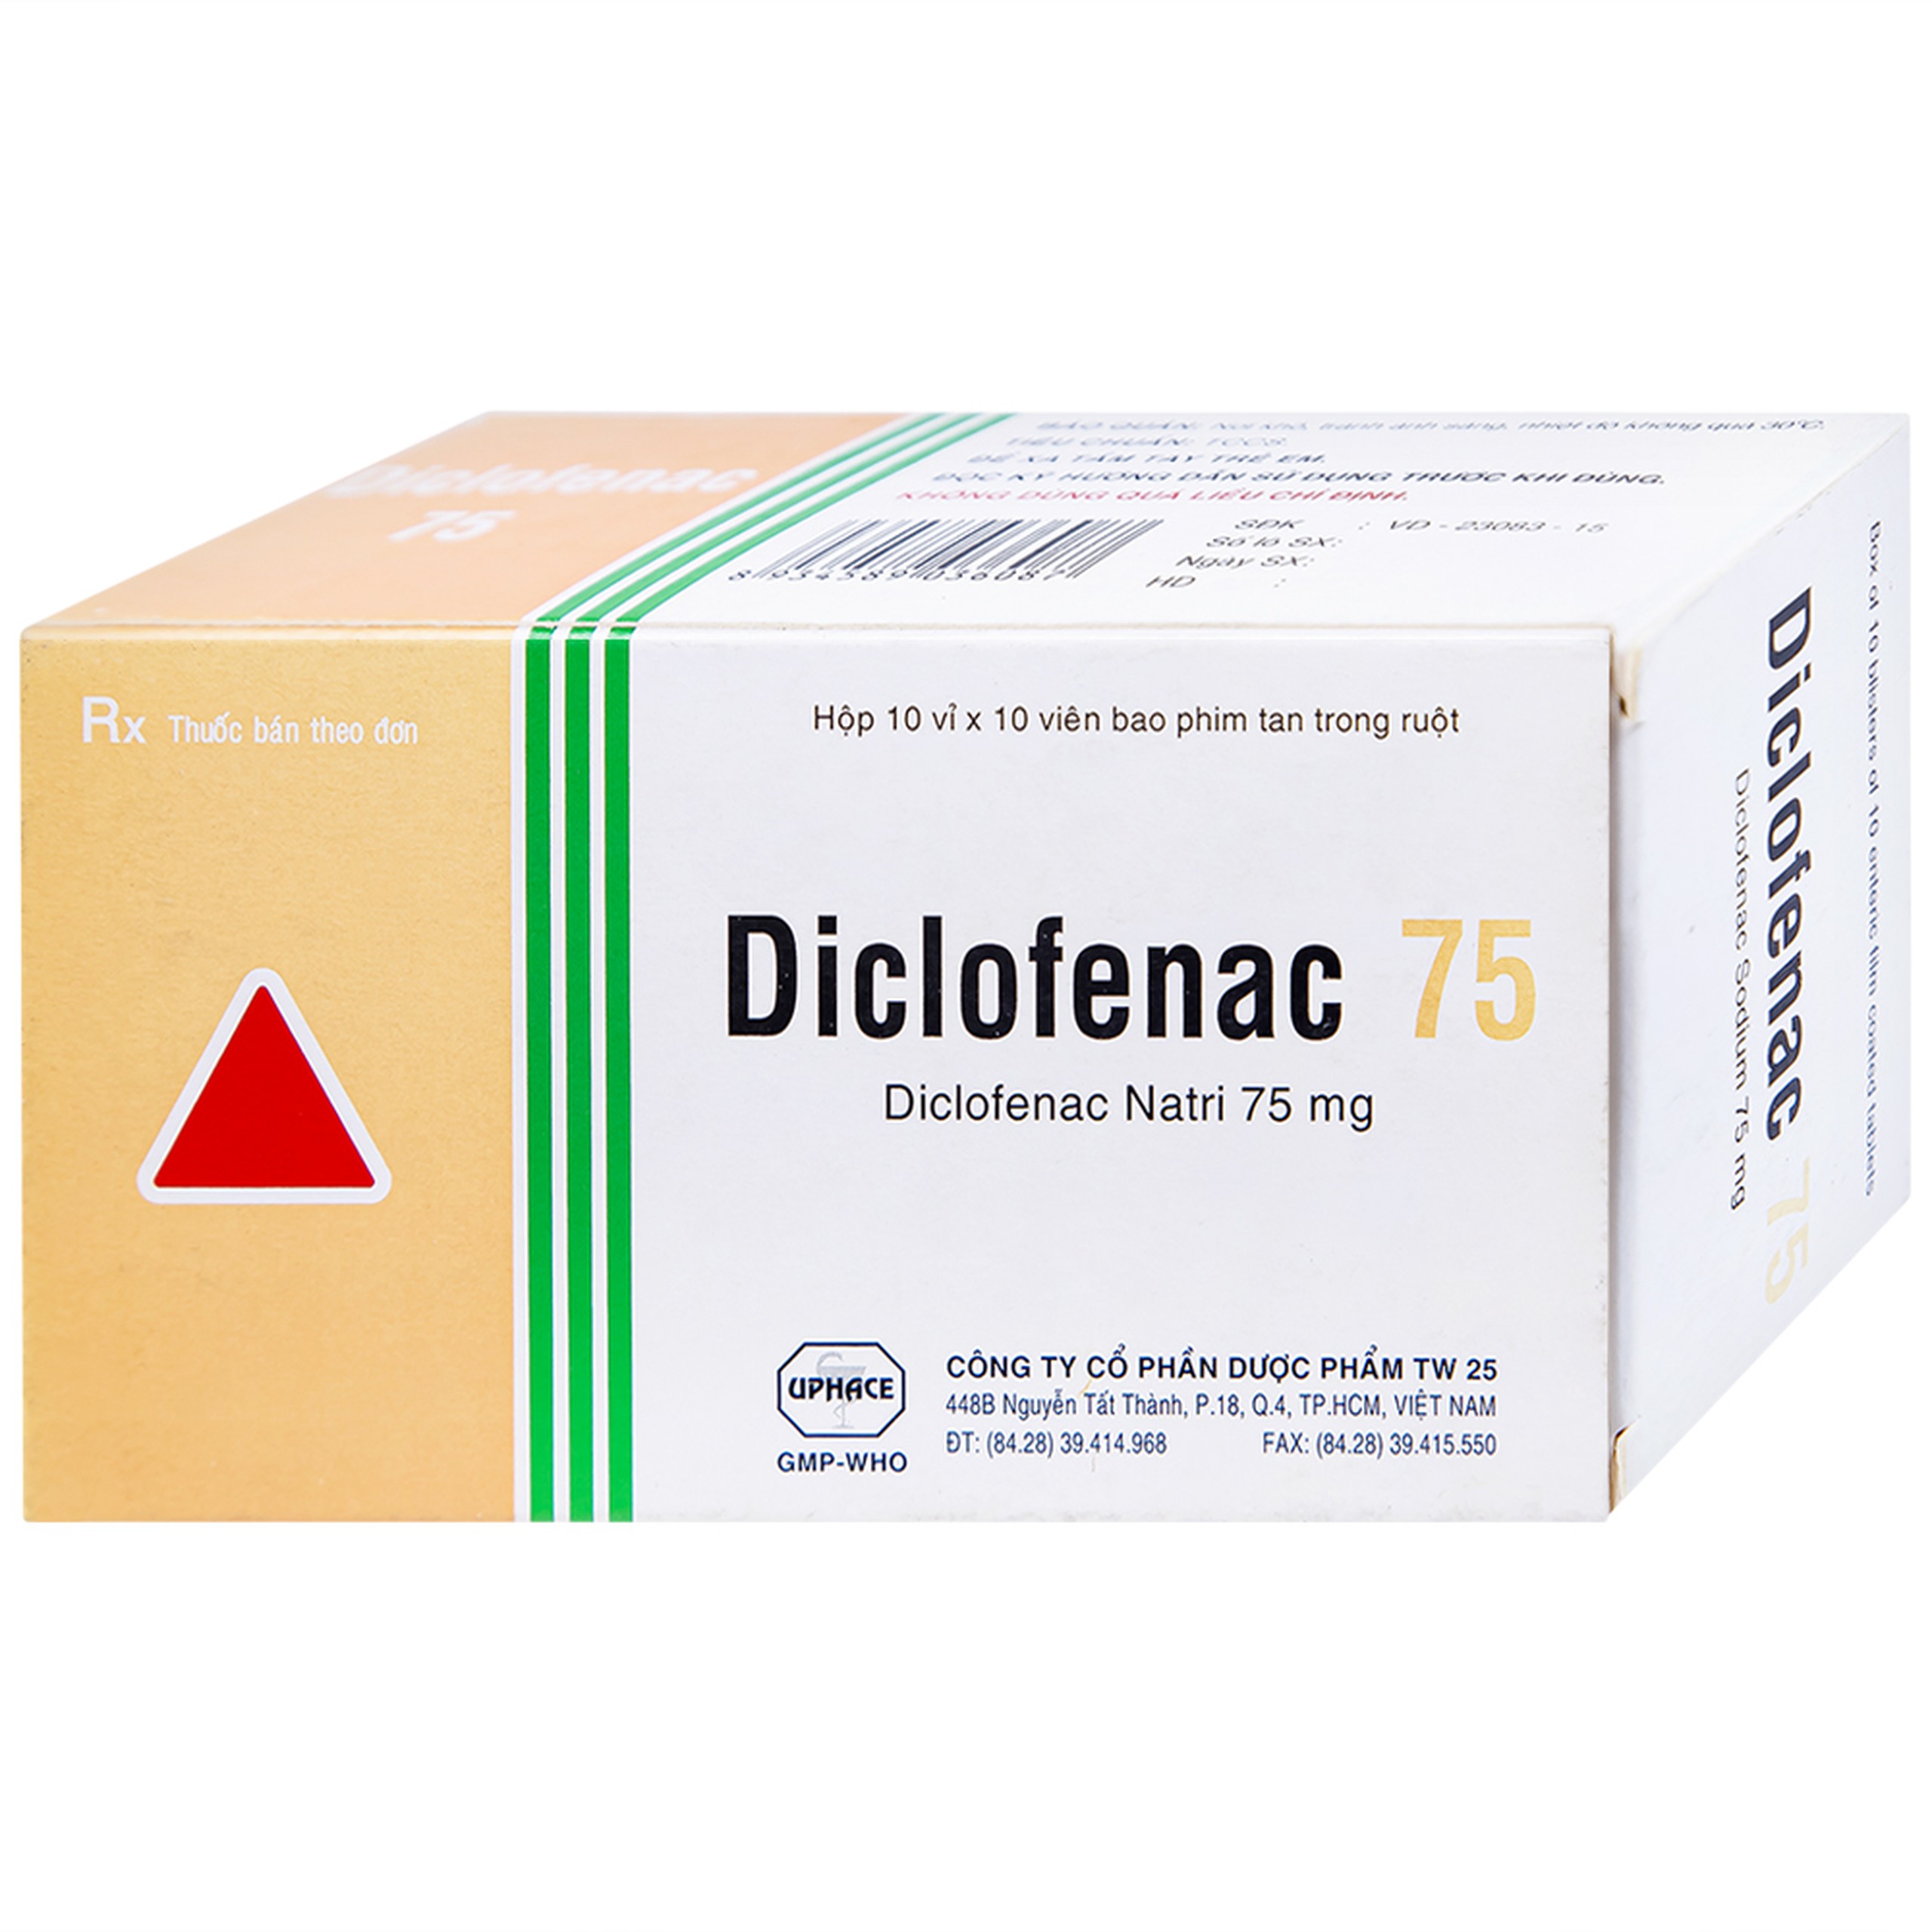 Thuốc Diclofenac 75 Uphace điều trị dài ngày viêm khớp mạn, thoái hóa khớp (10 vỉ x 10 viên)